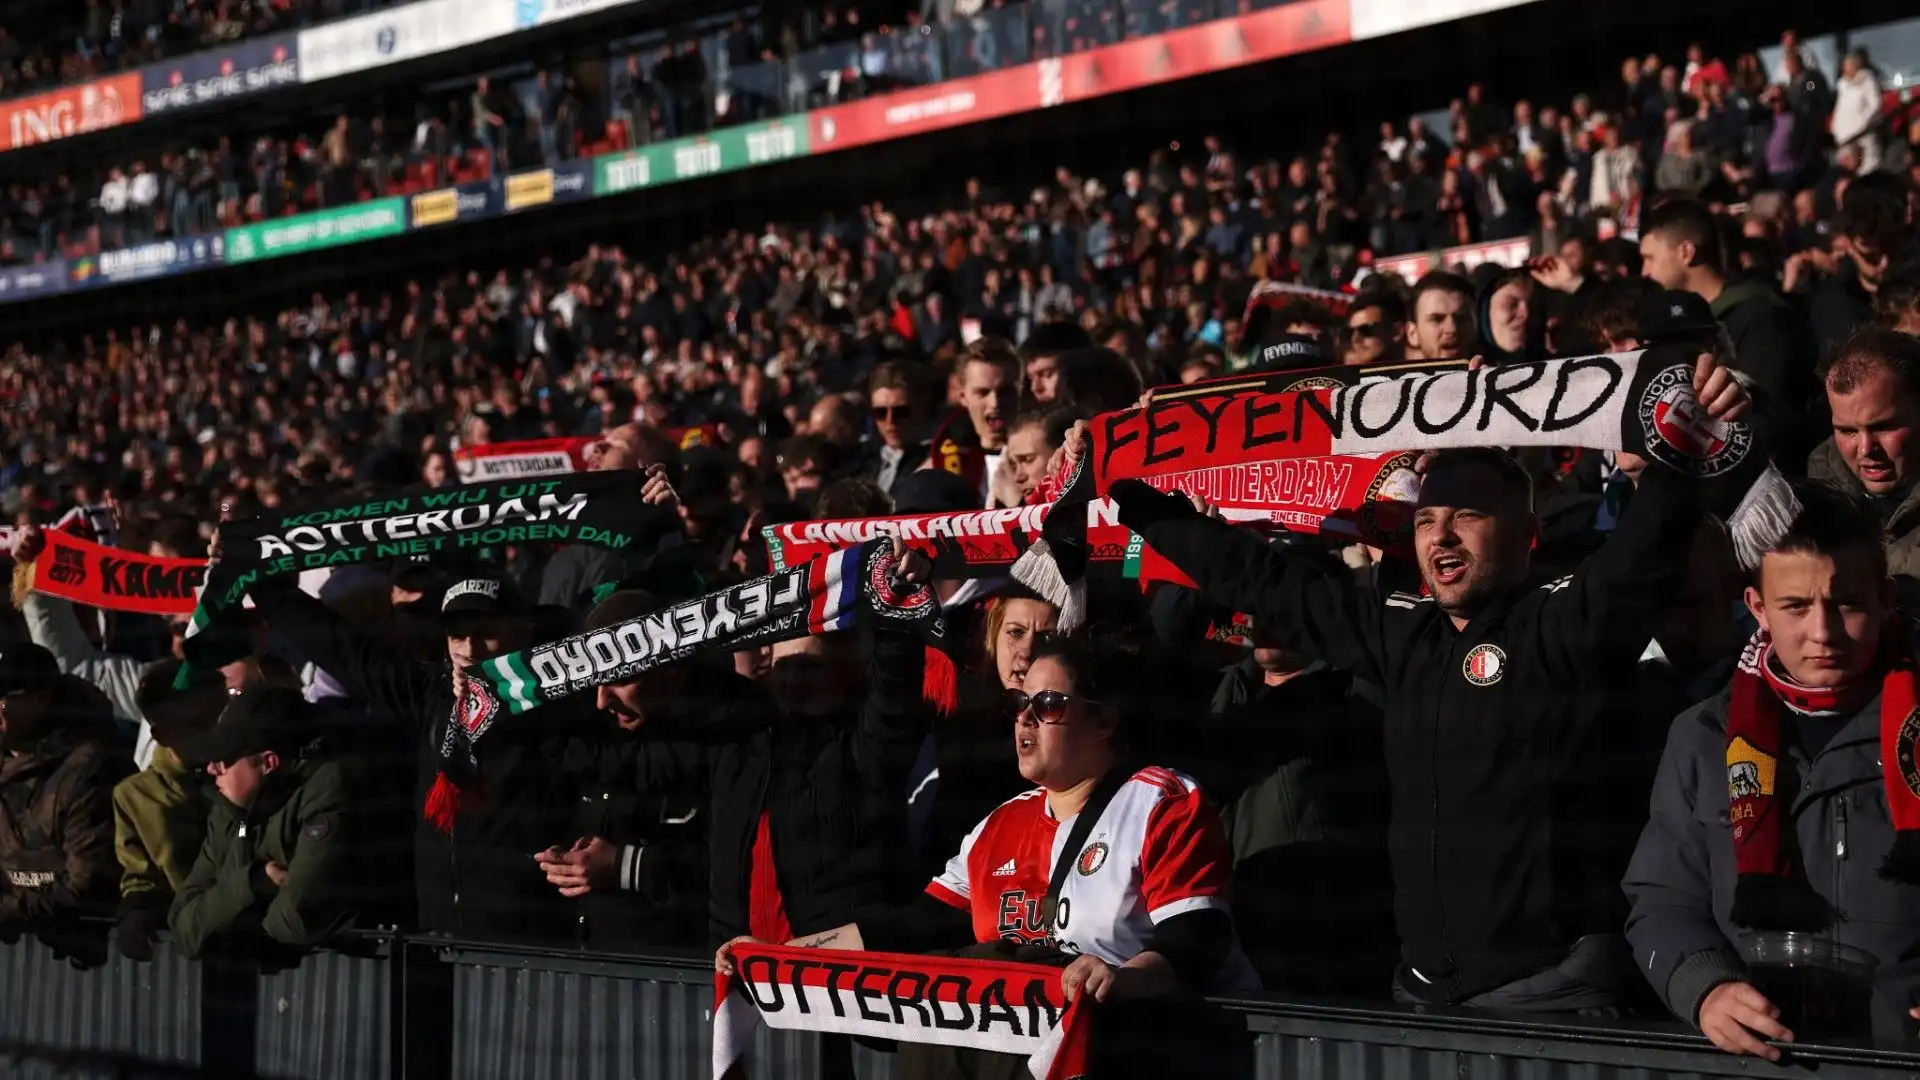 Non è la prima volta che i tifosi del Feyenoord allestiscono uno spettacolo così: era già successo con dei pupazzetti